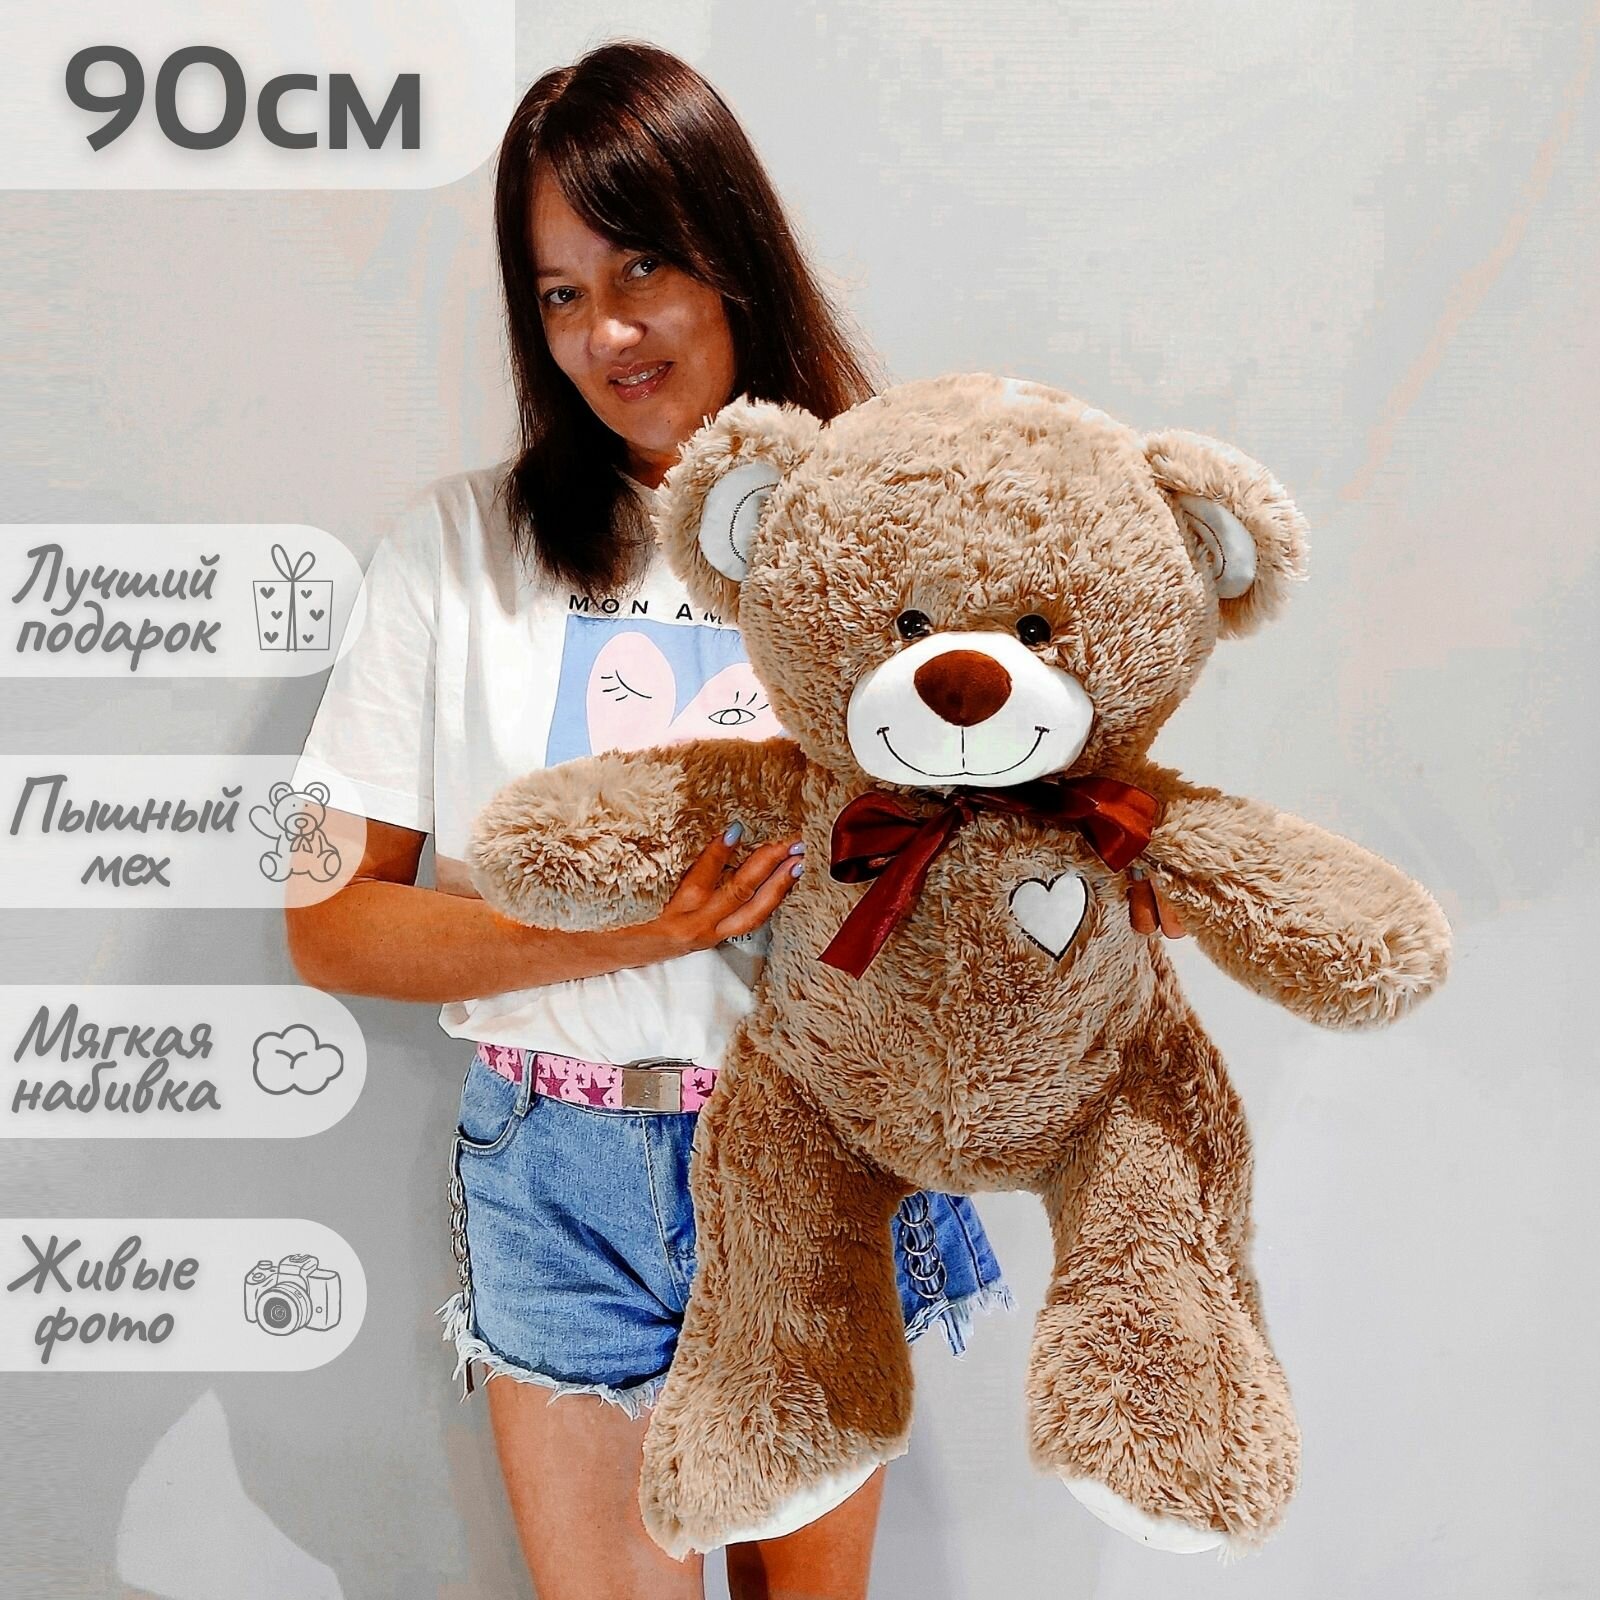 Большой плюшевый медведь, мишка, мягкая игрушка Феликс 90 см, коричневый